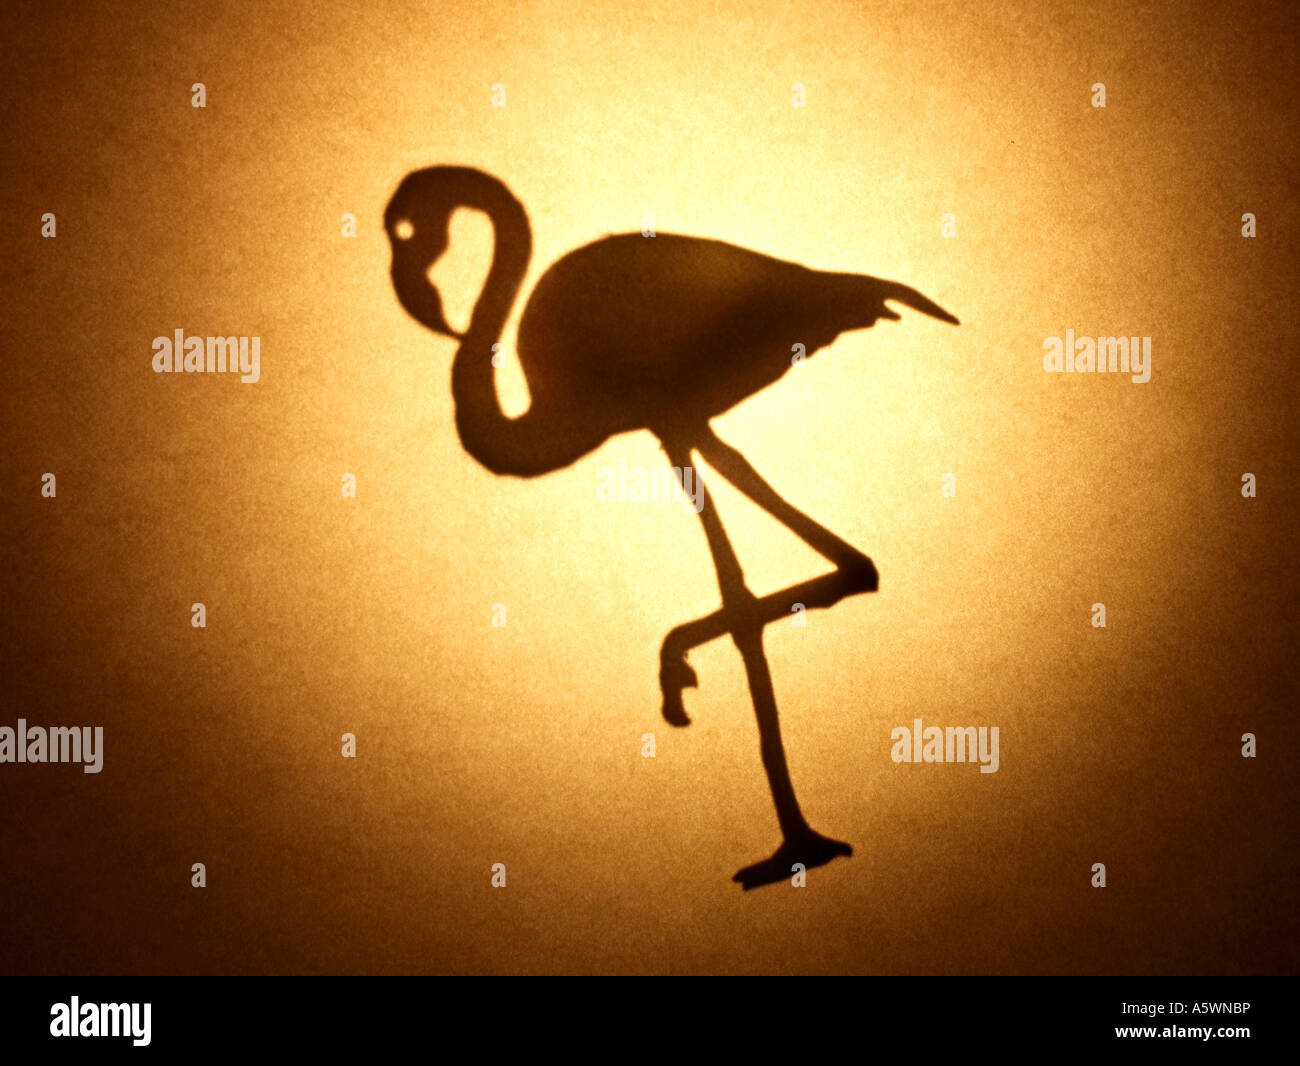 Flamingo silhouette Stock Photo